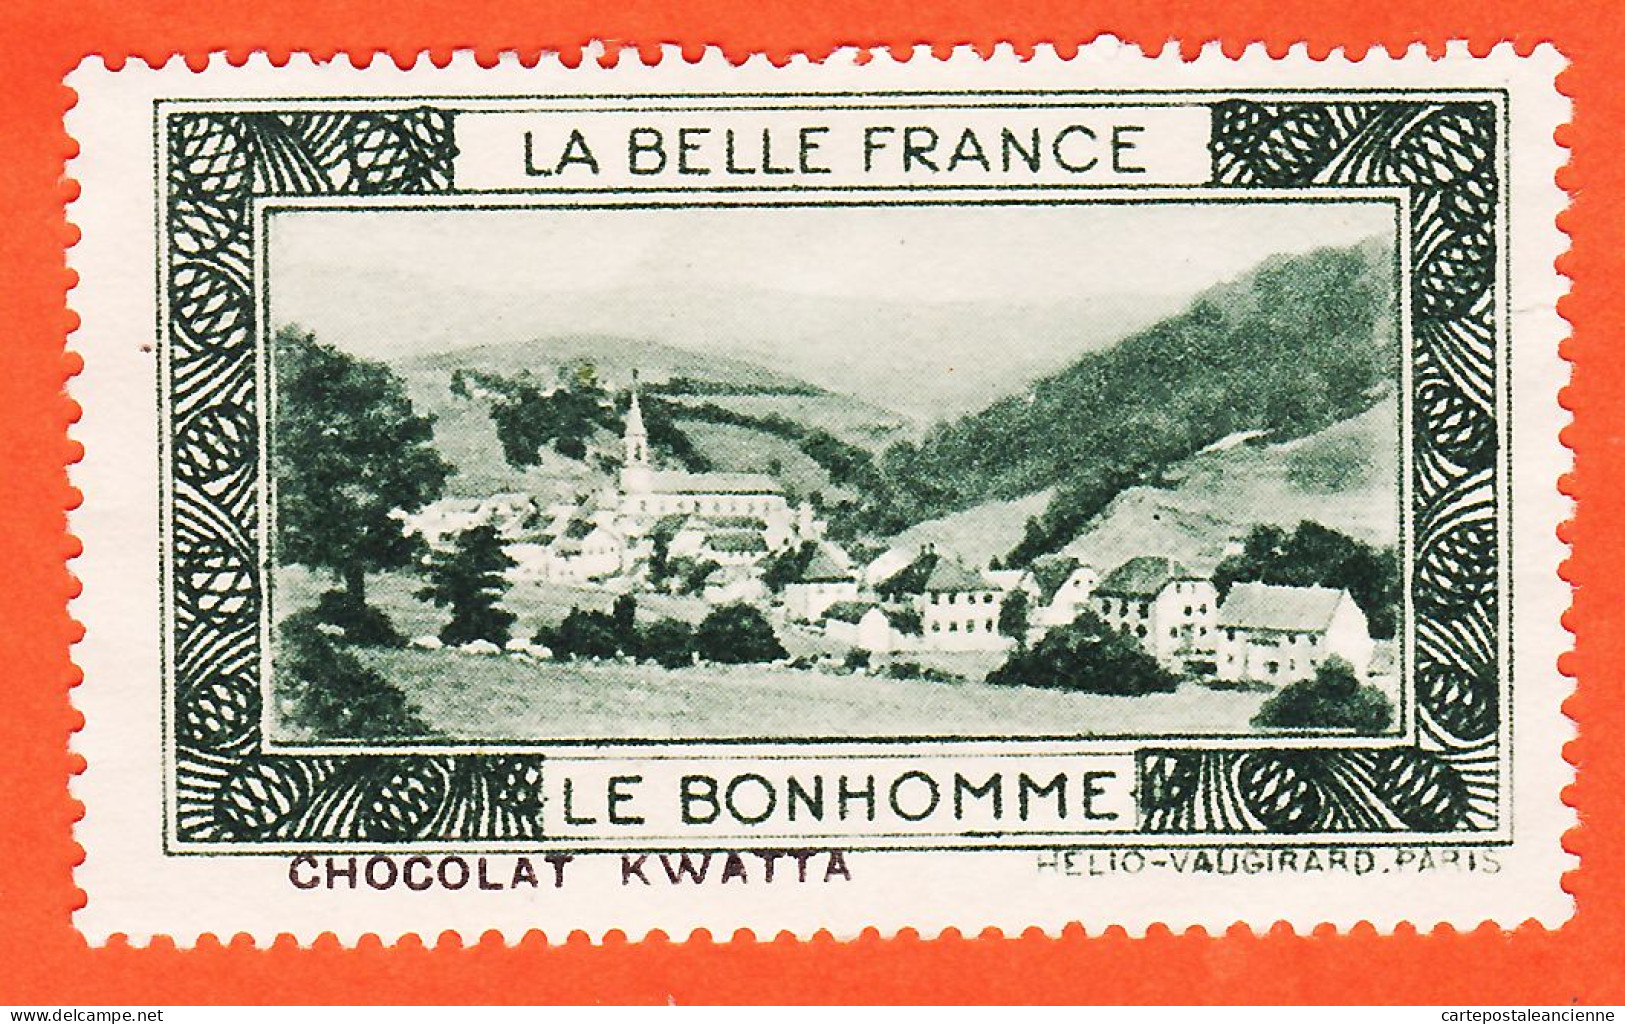 00162 ● (2) LE BONHOMME 68-Haut Rhin Pub Chocolat KWATTA Vignette Collection BELLE FRANCE HELIO-VAUGIRARD Erinnophilie - Tourisme (Vignettes)